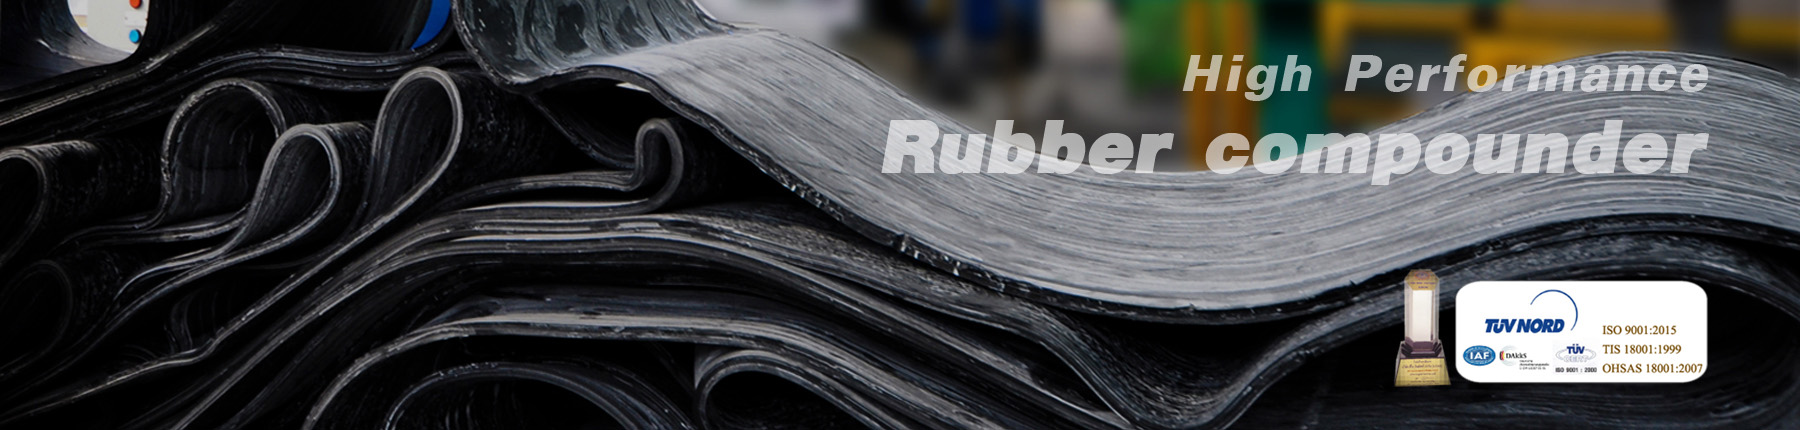 Rubber-slide